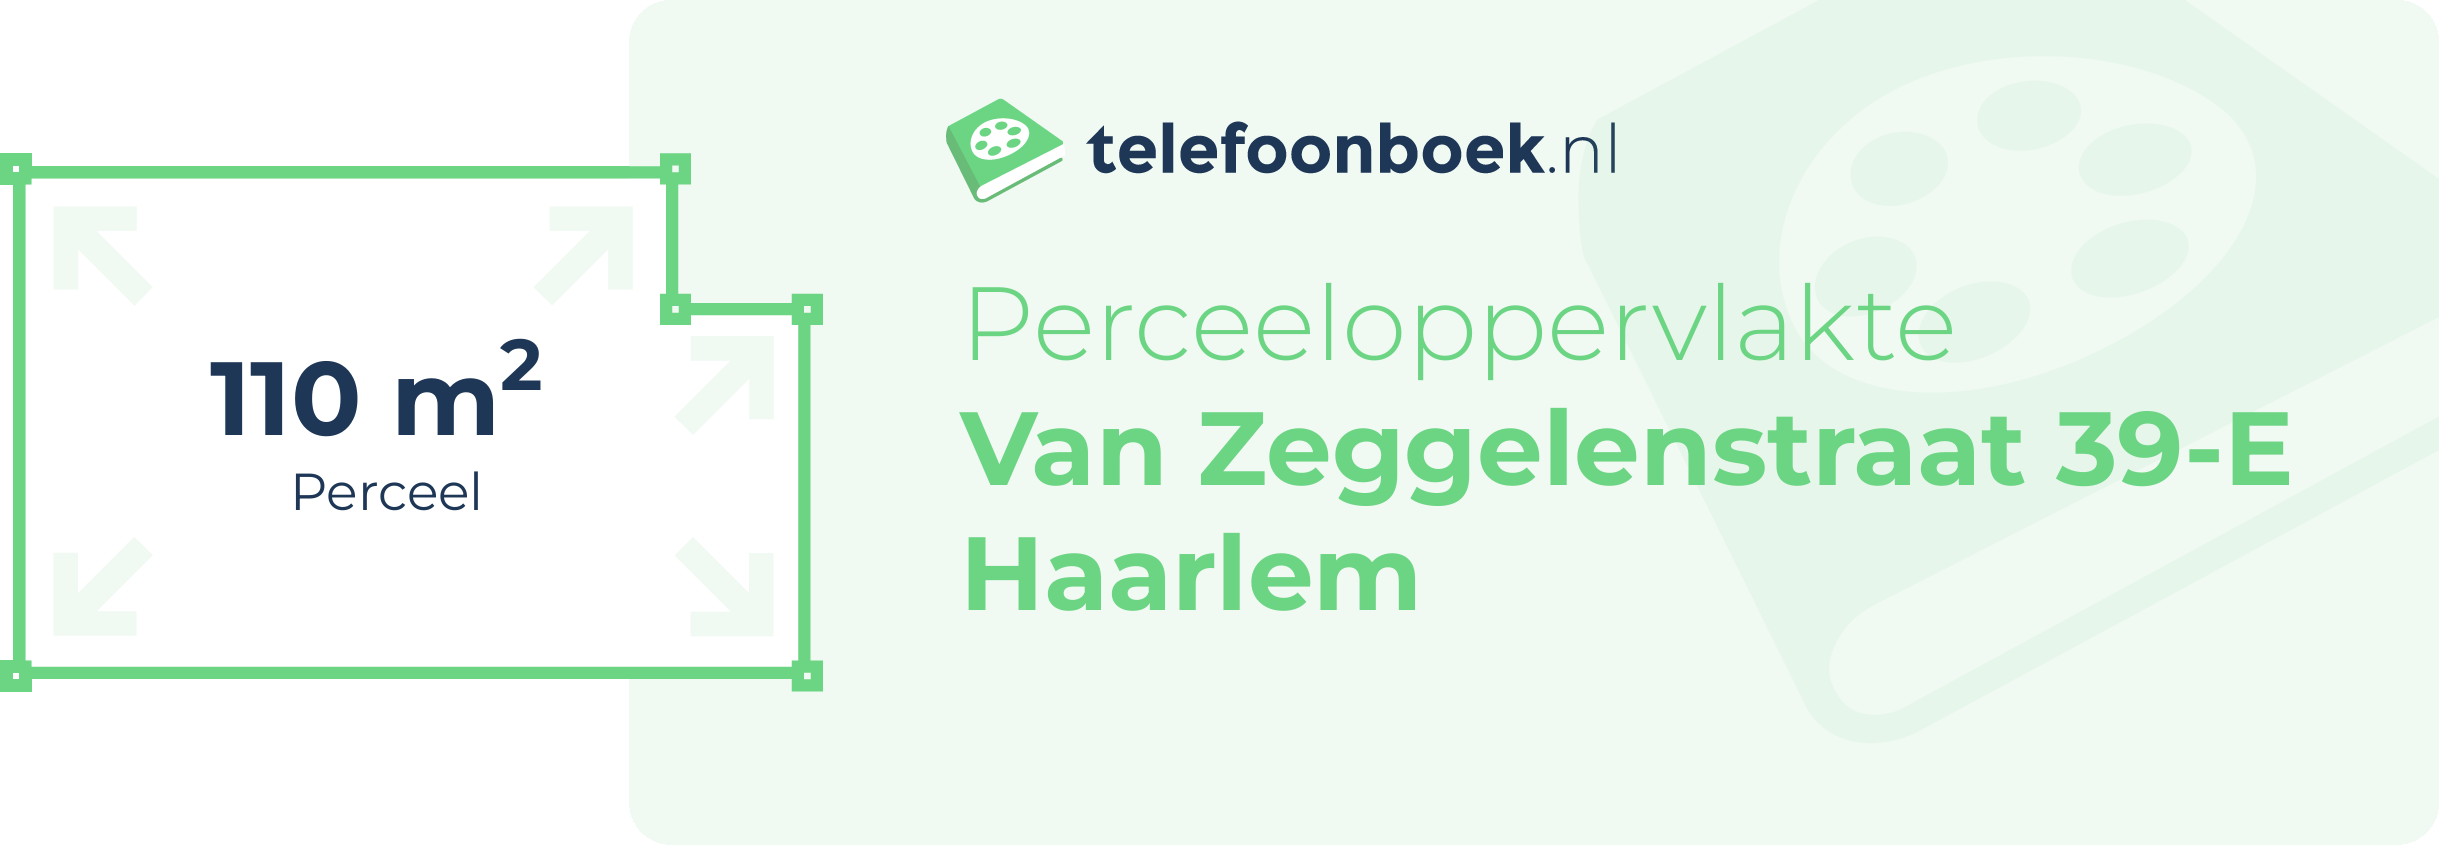 Perceeloppervlakte Van Zeggelenstraat 39-E Haarlem